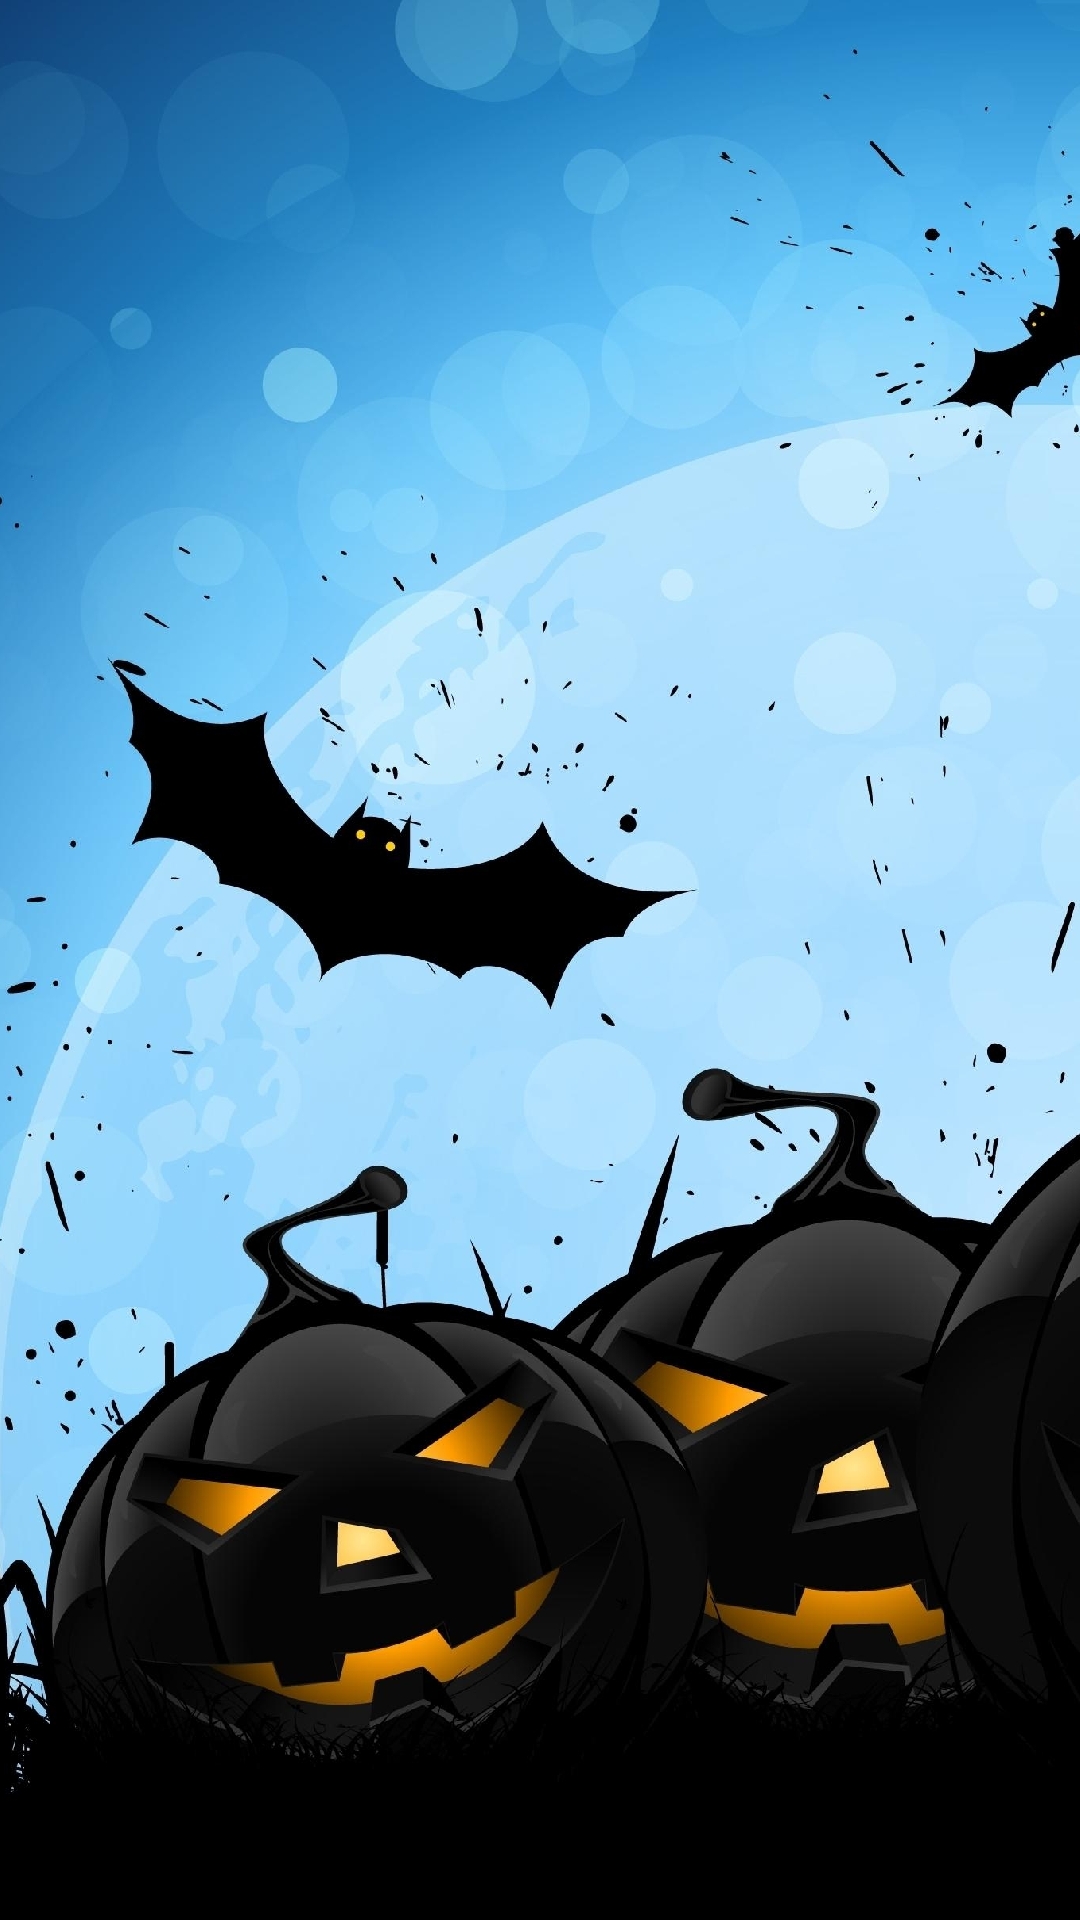 carta da parati di halloween,pipistrello,batman,illustrazione,personaggio fittizio,gregge